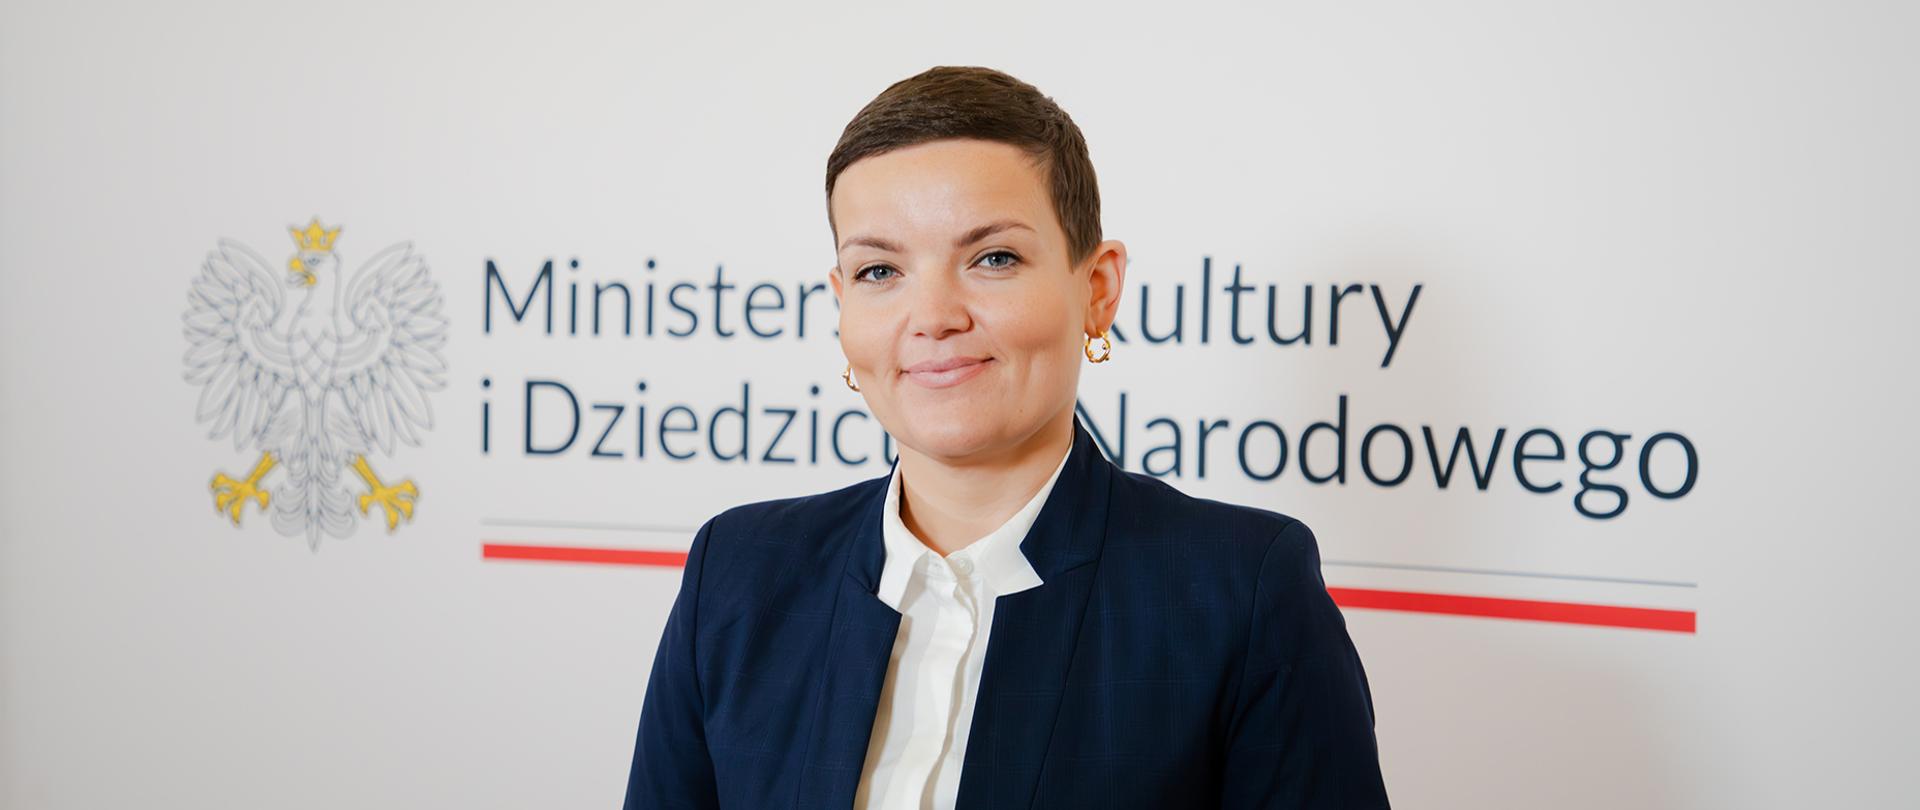 Dorota Żebrowska - sekretarz stanu, fot, Danuta Matloch